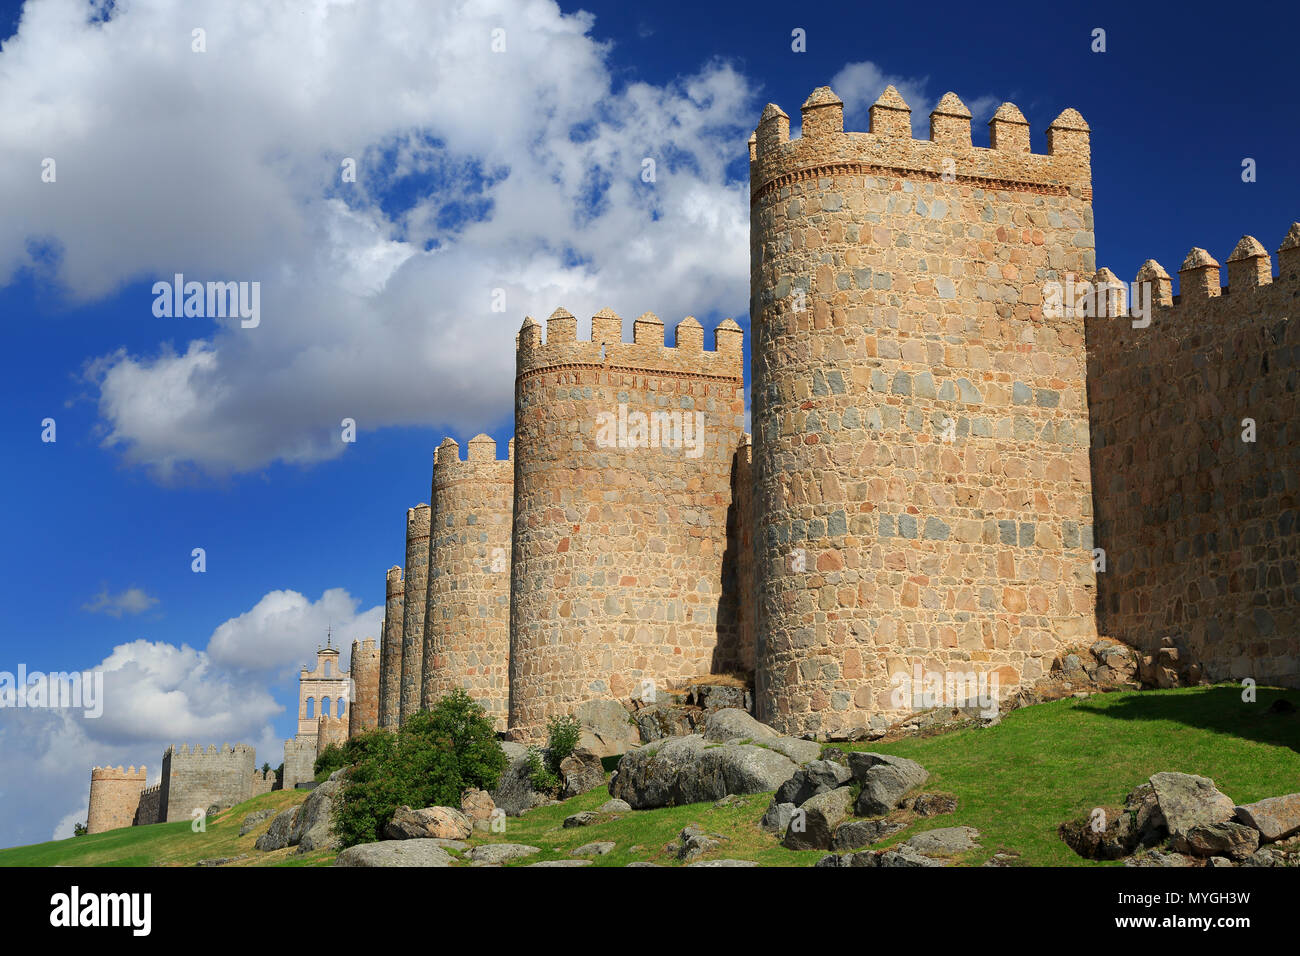 La ville médiévale d'Avila, Espagne Banque D'Images